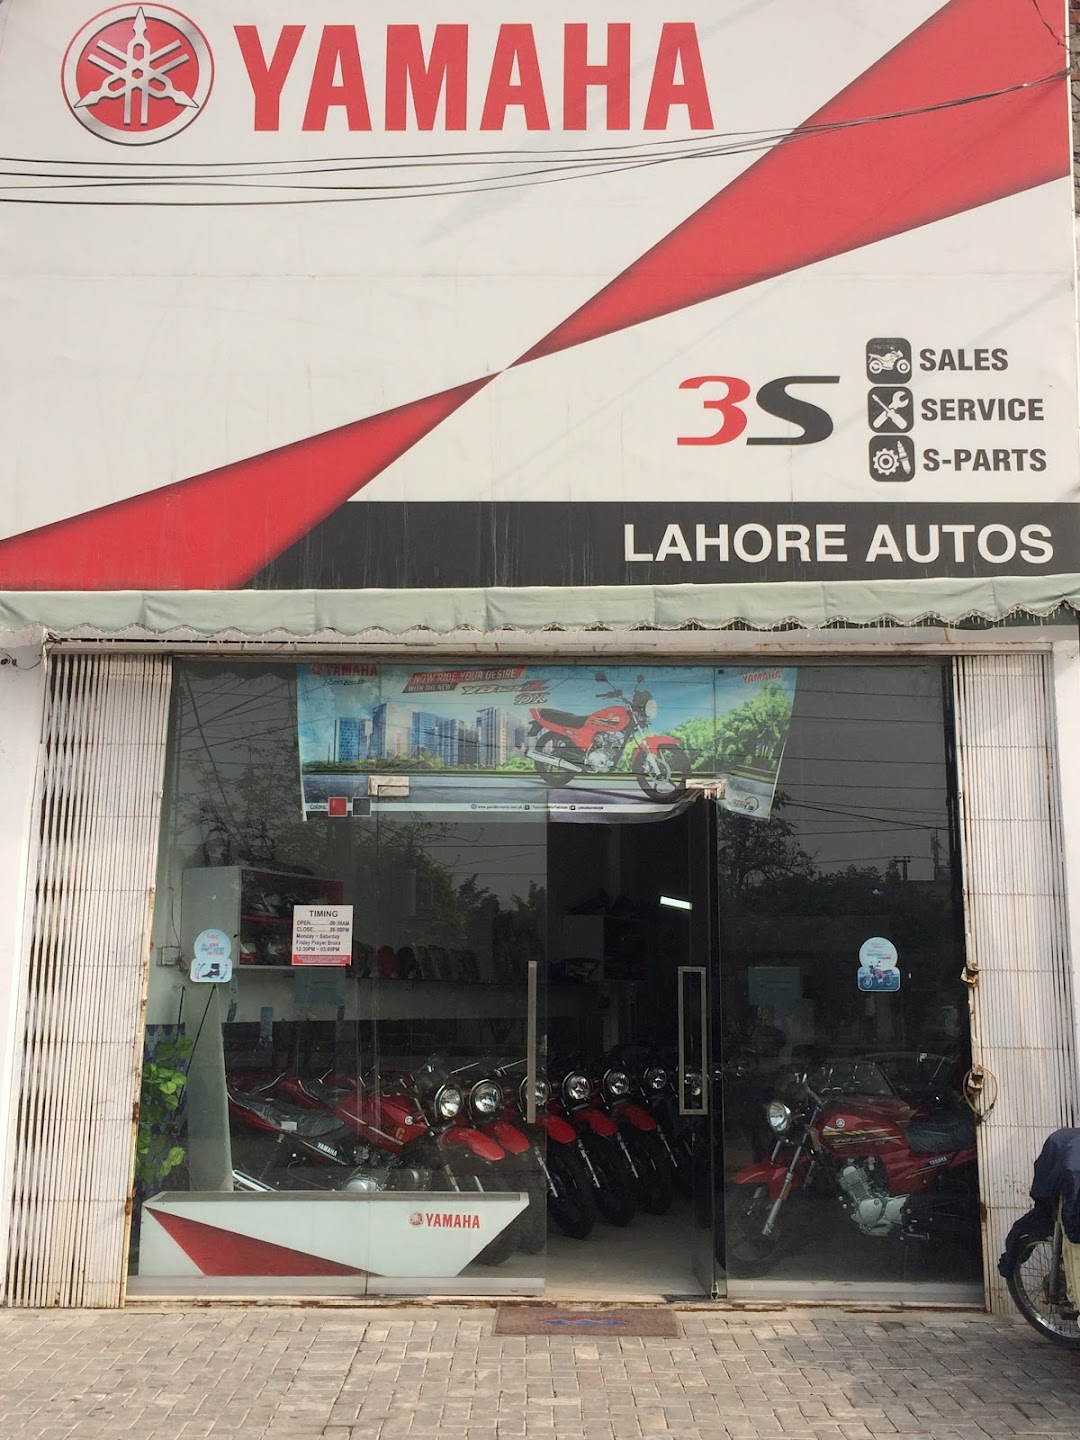 Yamaha Lahore autos(Authorised 3S Sale Service Spare Parts Warranty Claim Center Dealer